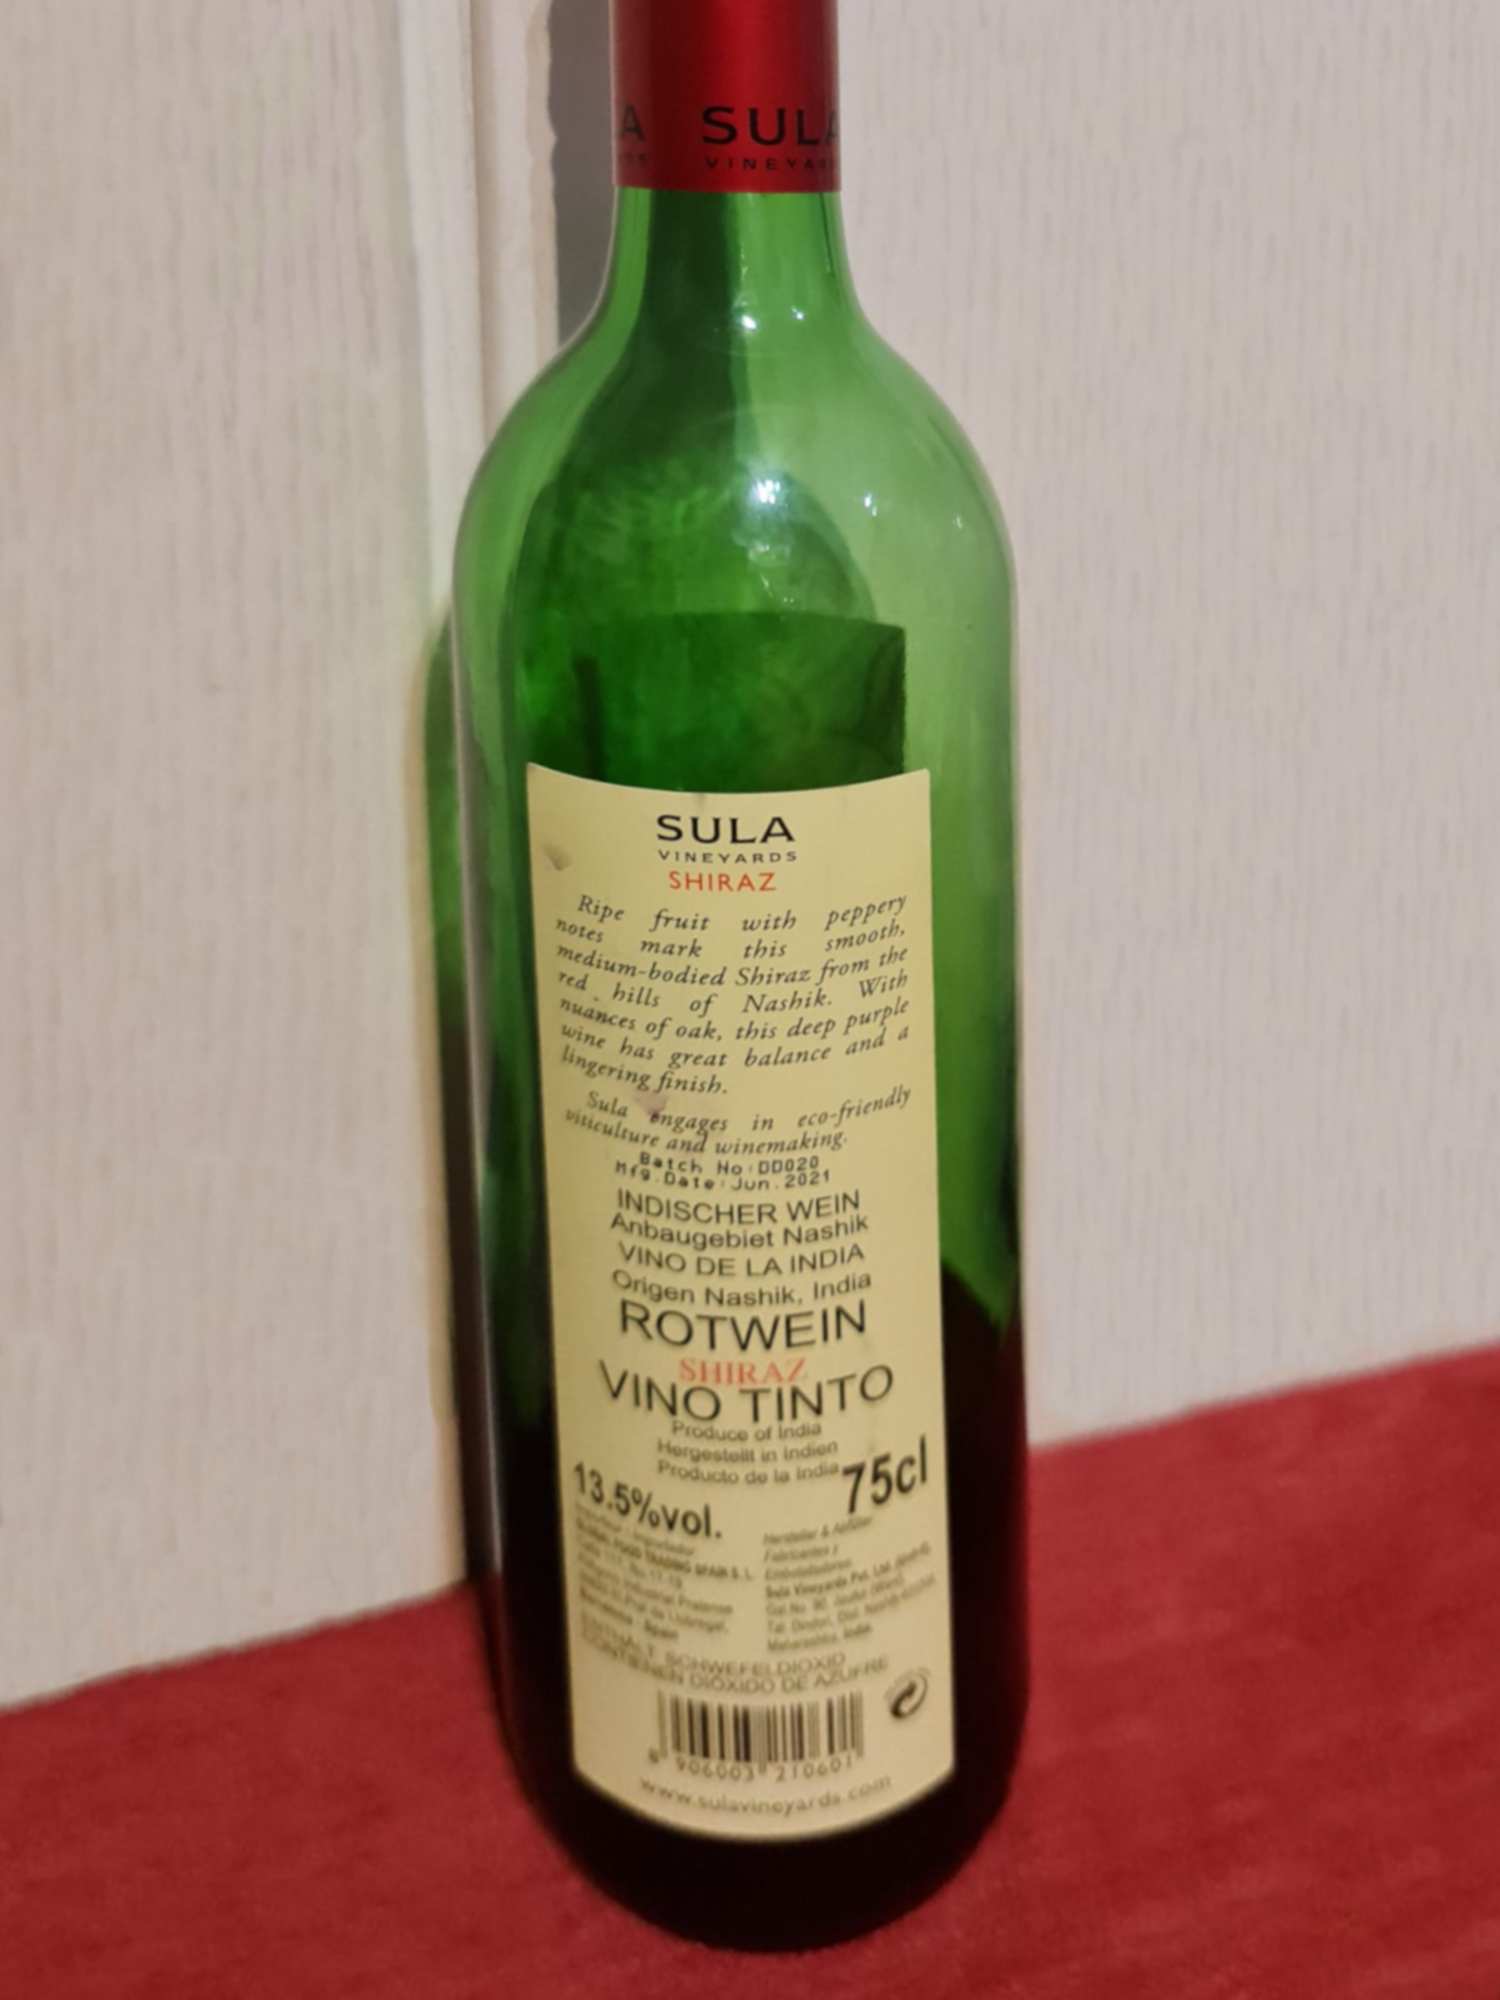 sula nuevo vino indio leon - Digital de León